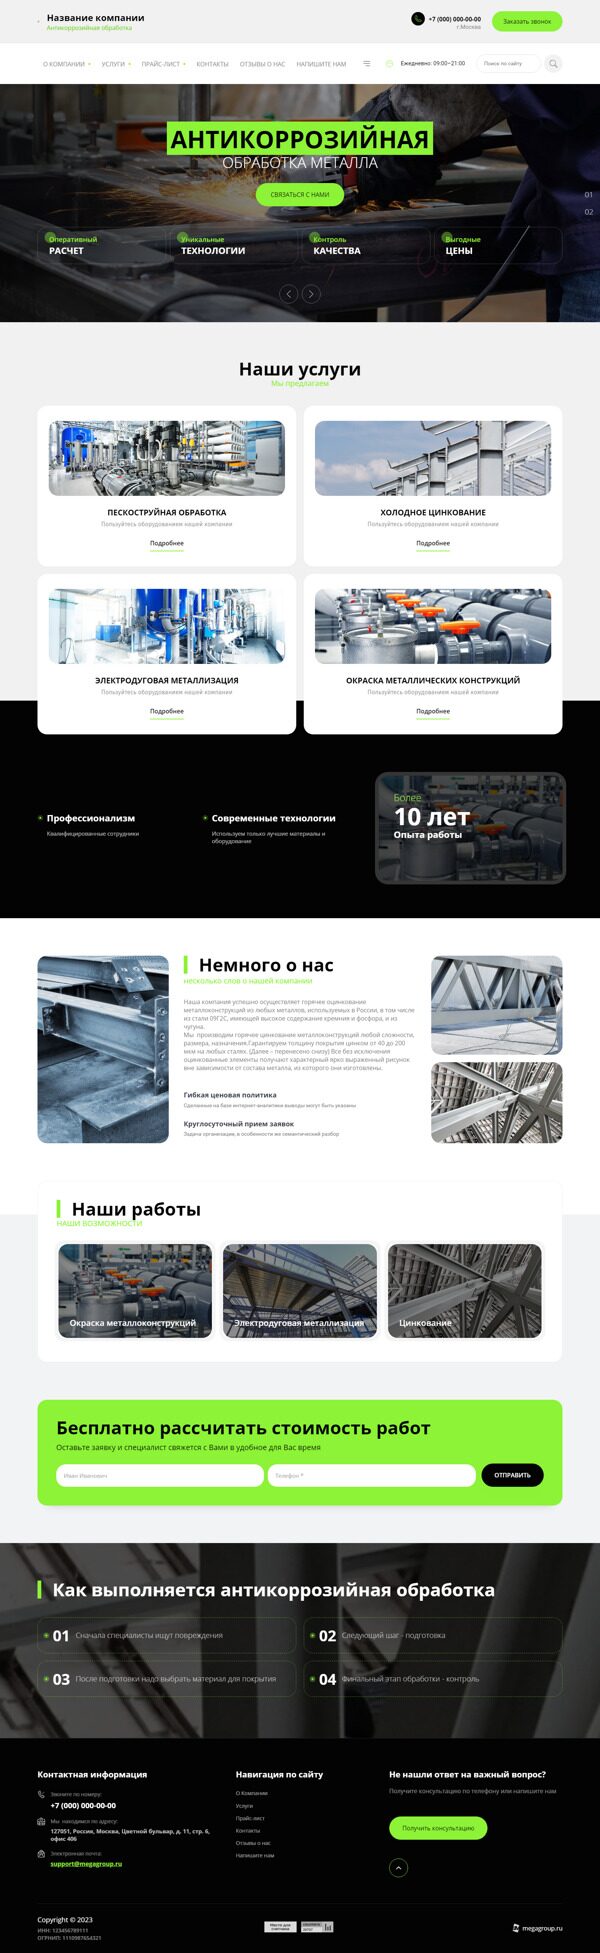 Готовый Сайт-Бизнес № 5469347 - Антикоррозийная обработка металлоконструкций (Десктопная версия)